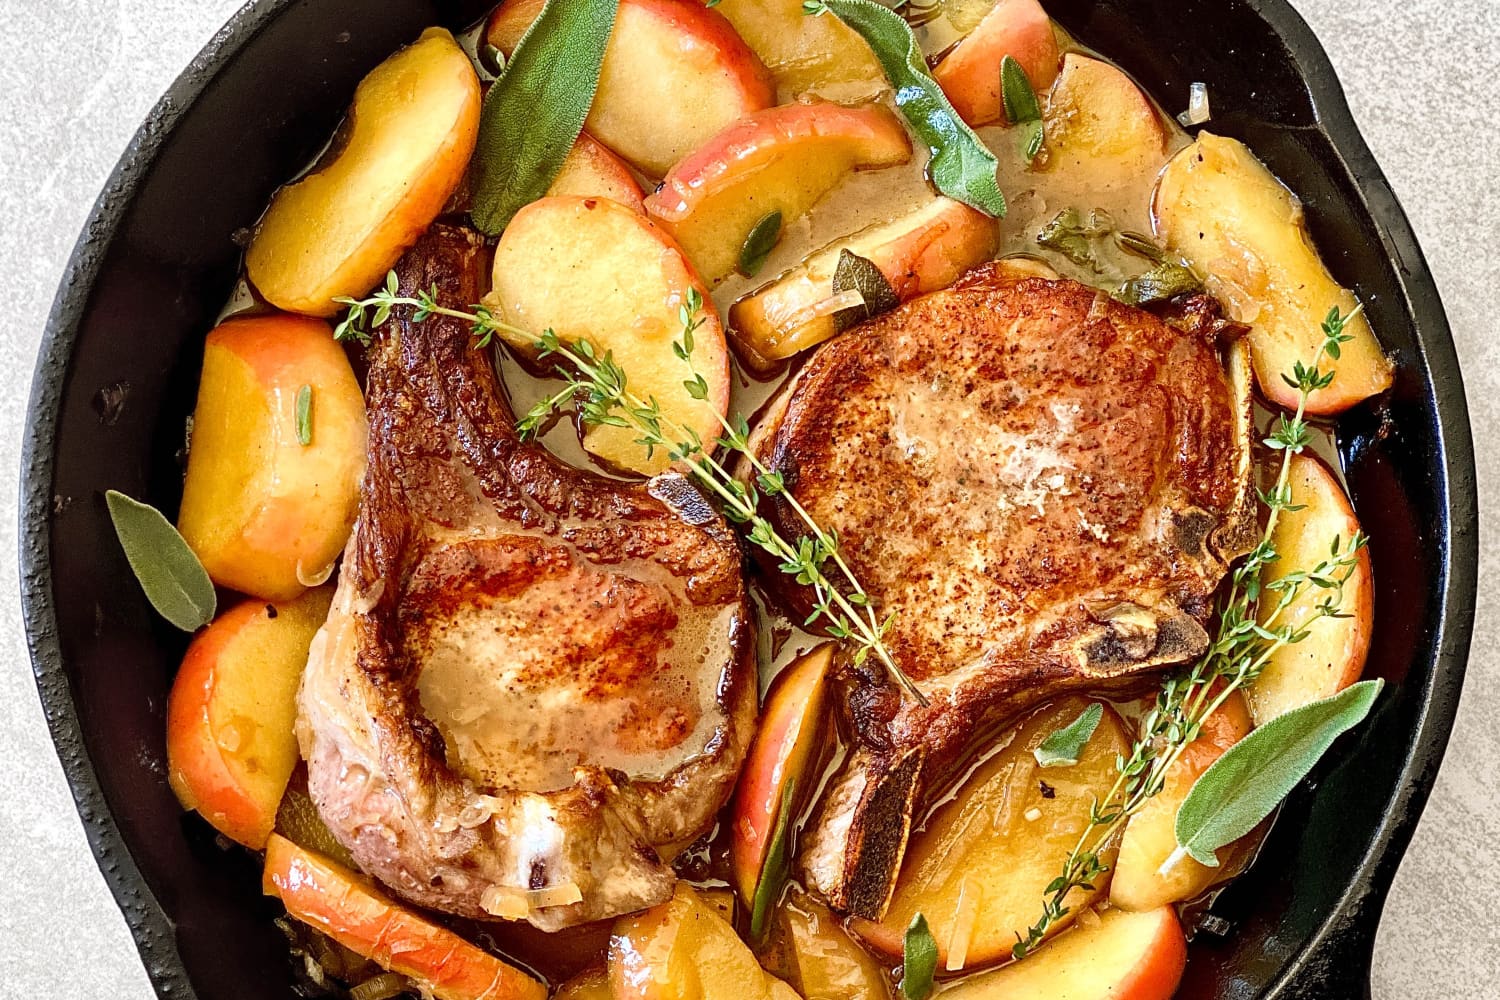 52 Best Pork Recipes - Easy Pork Recipes to Make for Dinner | The Kitchn